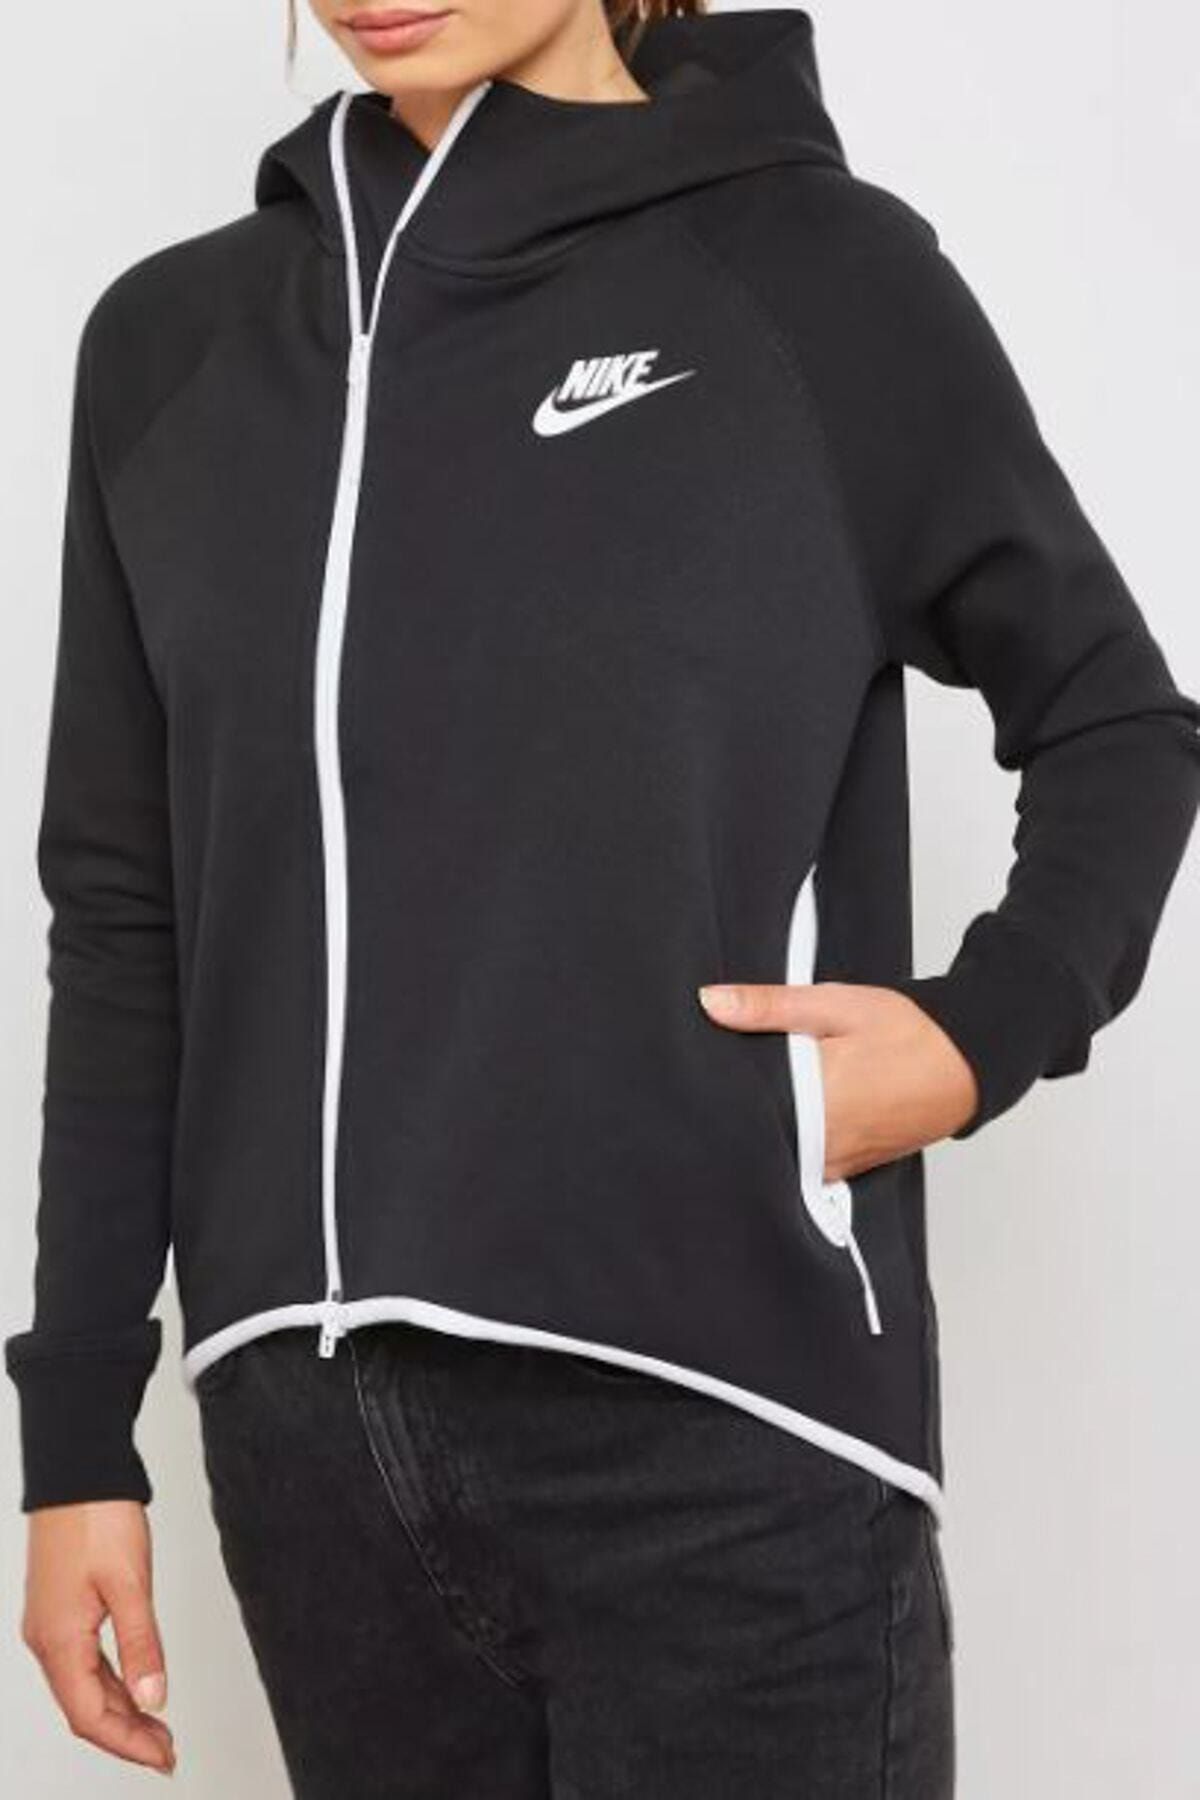 Nike Kadın Sweatshirt W Nsw Tch Flc Cape Fz - 930757-011